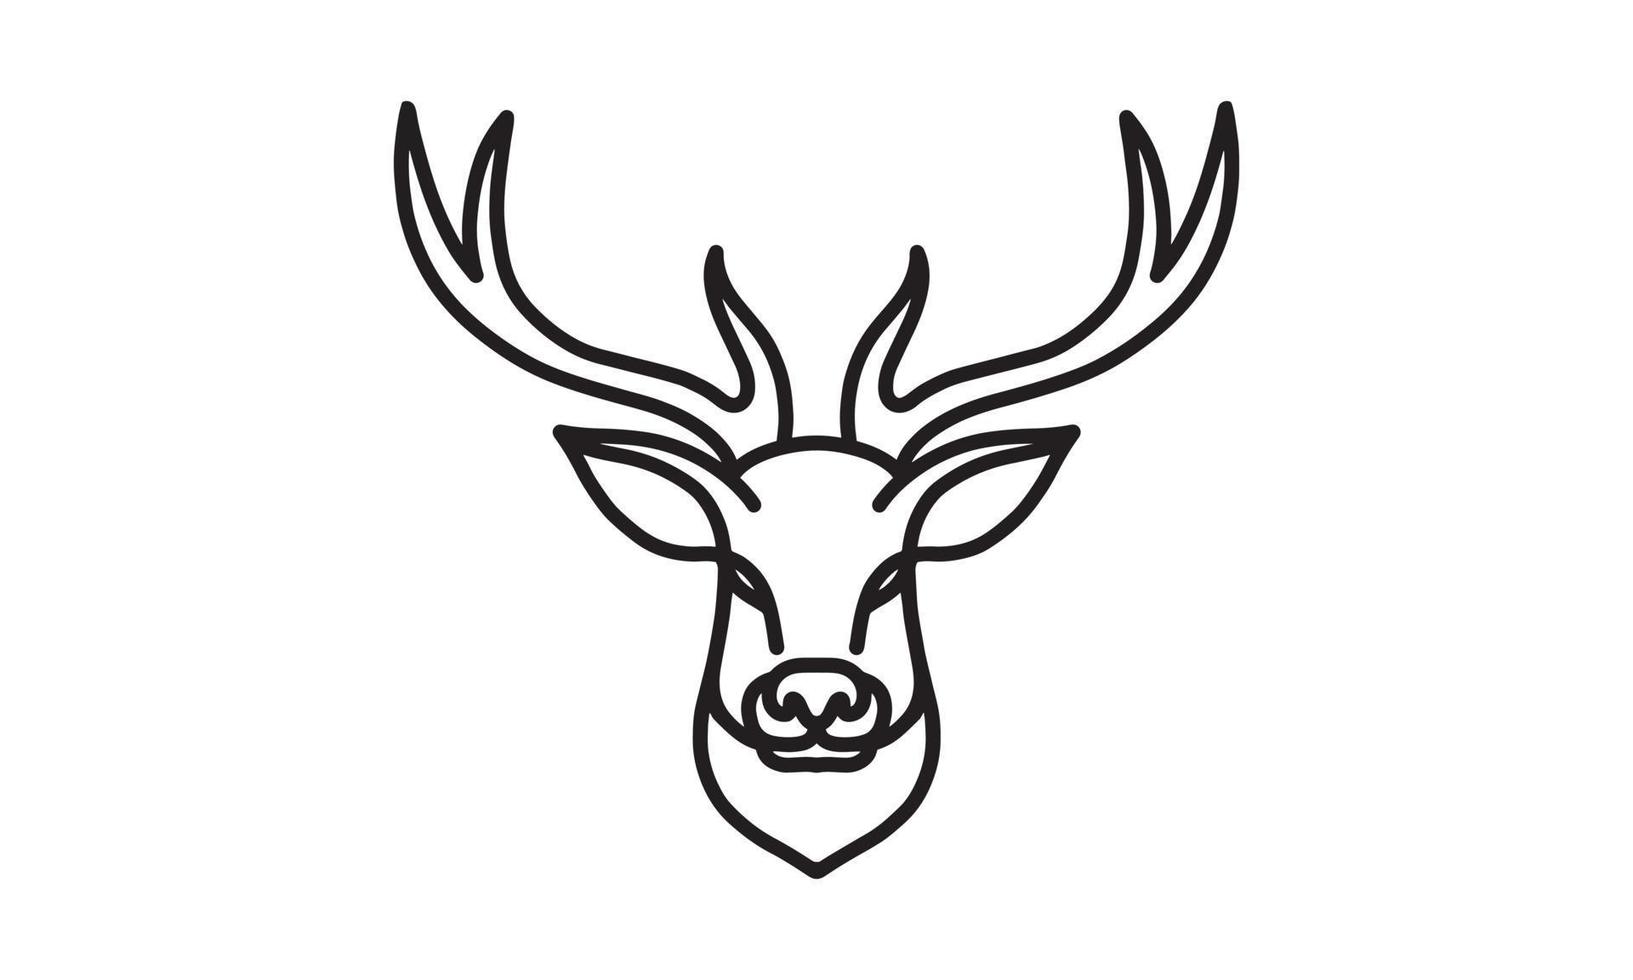 Hirsch Vektor Liniensymbol, Tierkopf Vektor Strichzeichnungen, isolierte Tierillustration für Logo desain